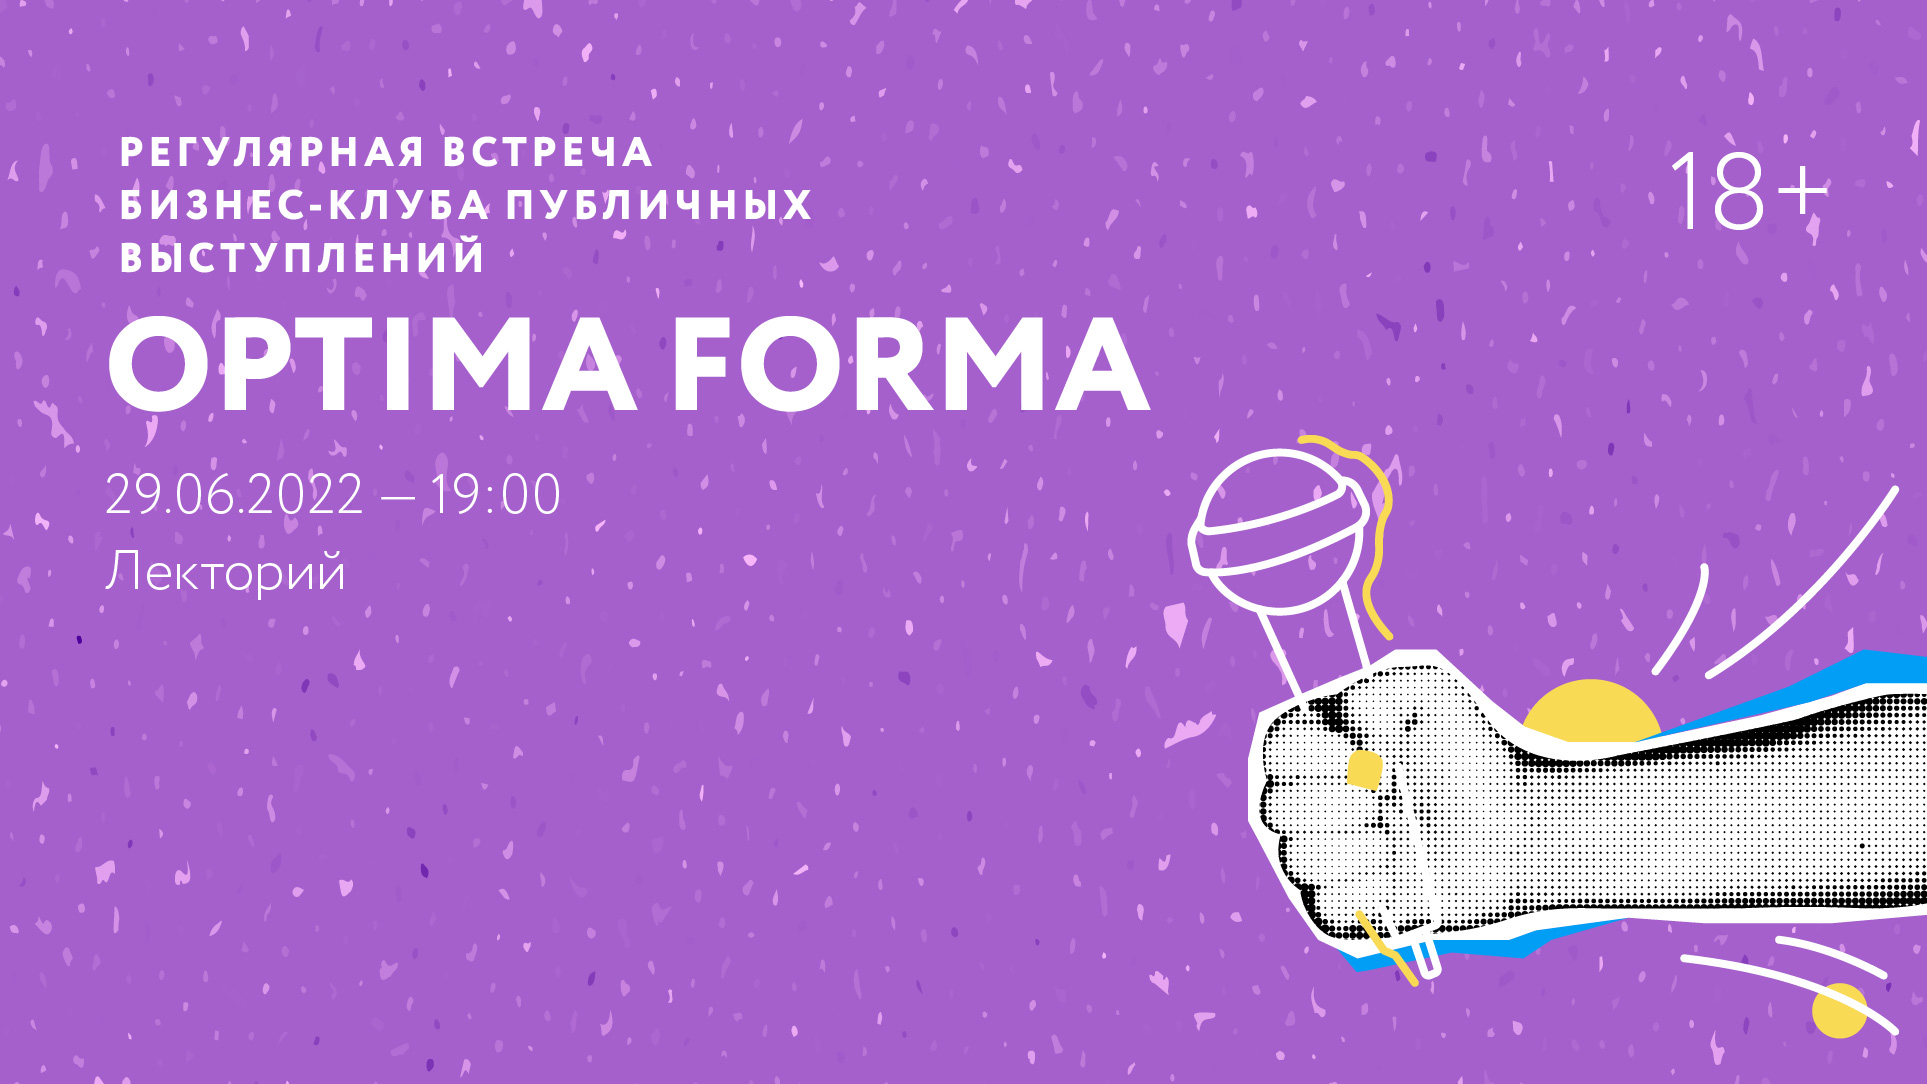 Регулярная встреча бизнес-клуба публичных выступлений Optima Forma